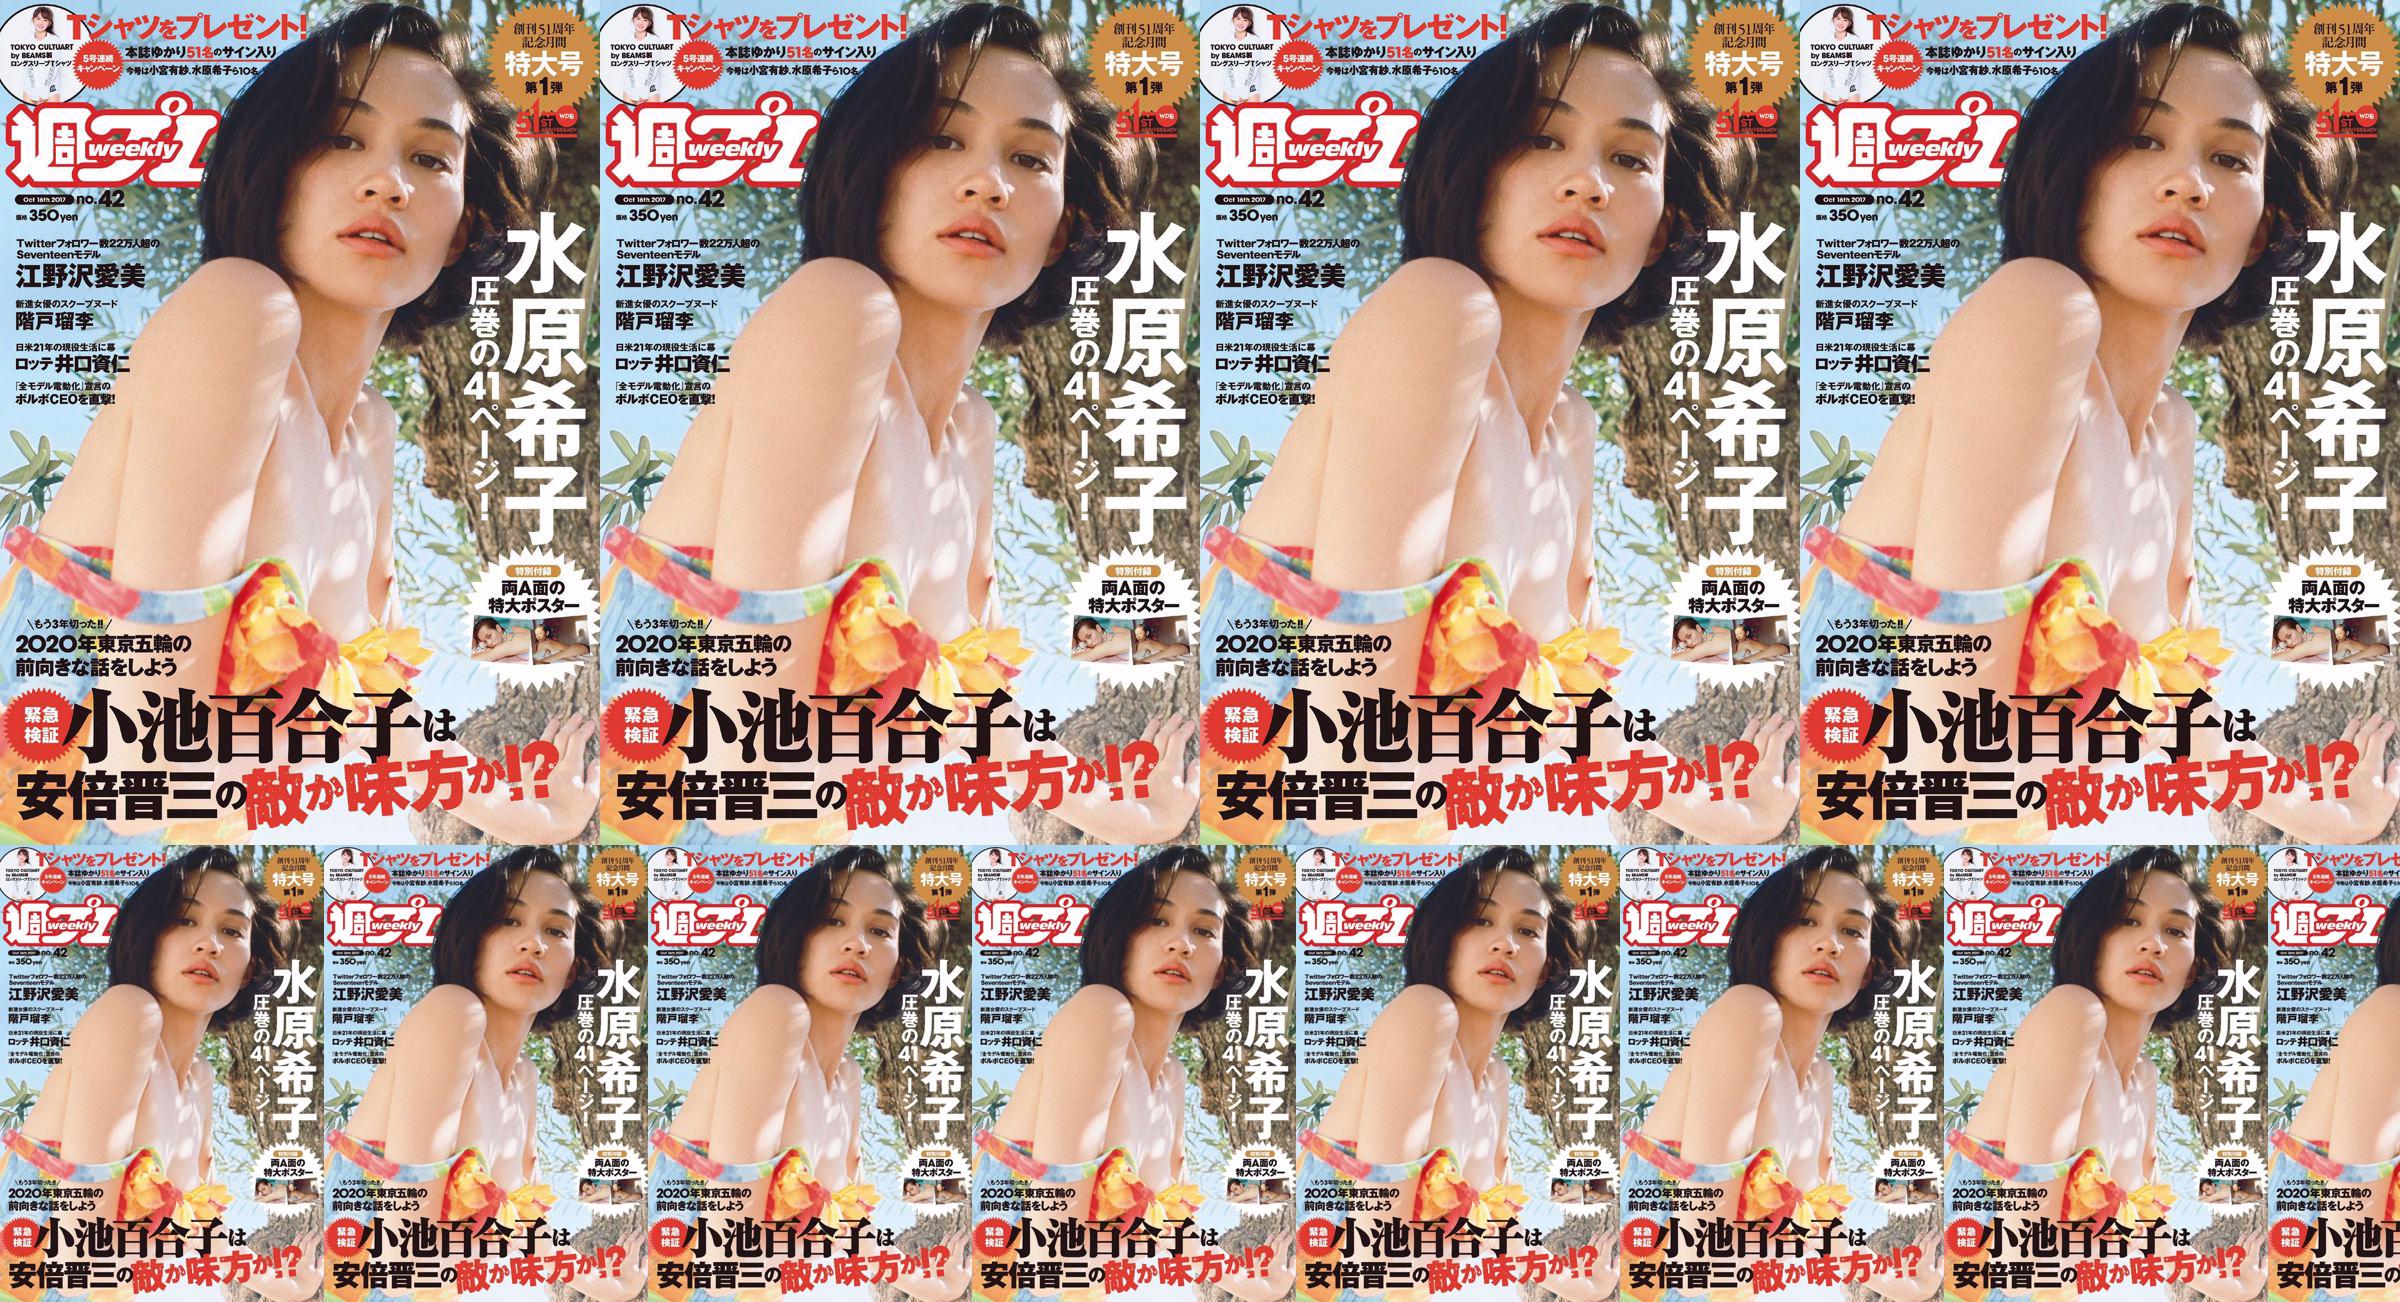 Kiko Mizuhara Manami Enosawa Serina Fukui Miu Nakamura Ruri Shinato [Weekly Playboy] 2017 No.42 Photo Magazine No.acc625 Page 1